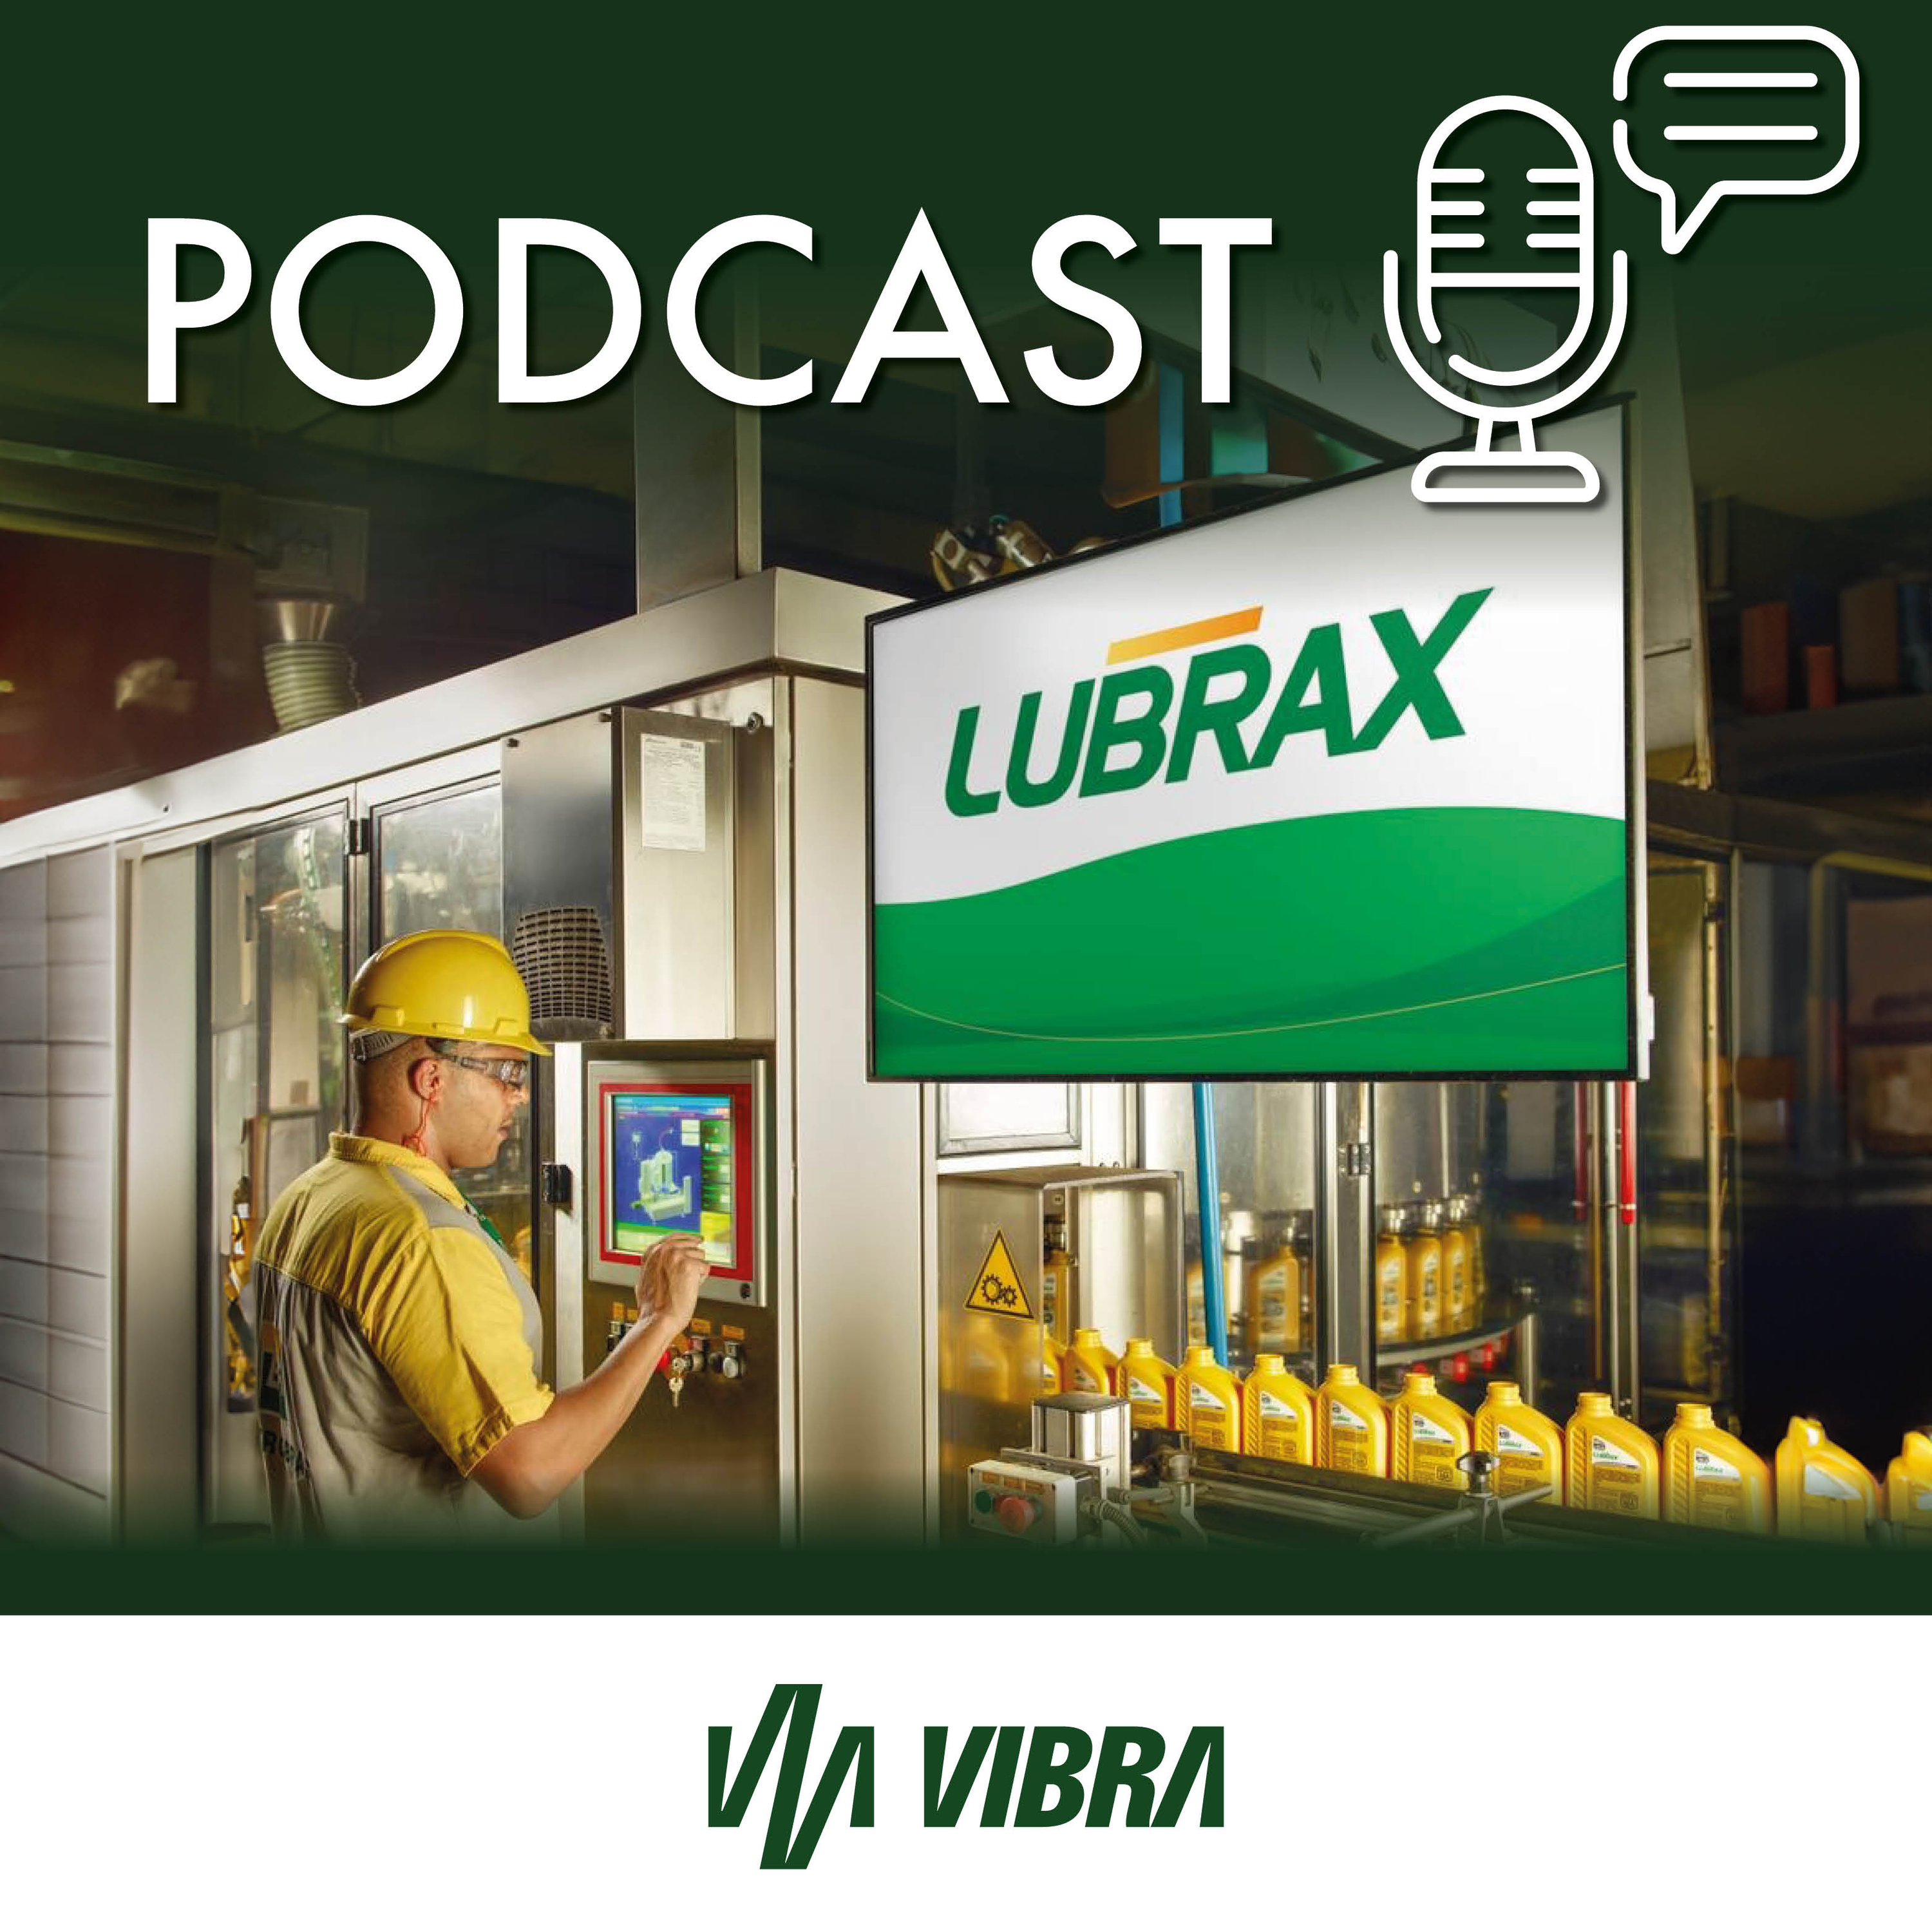 Líder de mercado, Lubrax dá novos passos para ampliar portfólio com eficiência e sustentabilidade